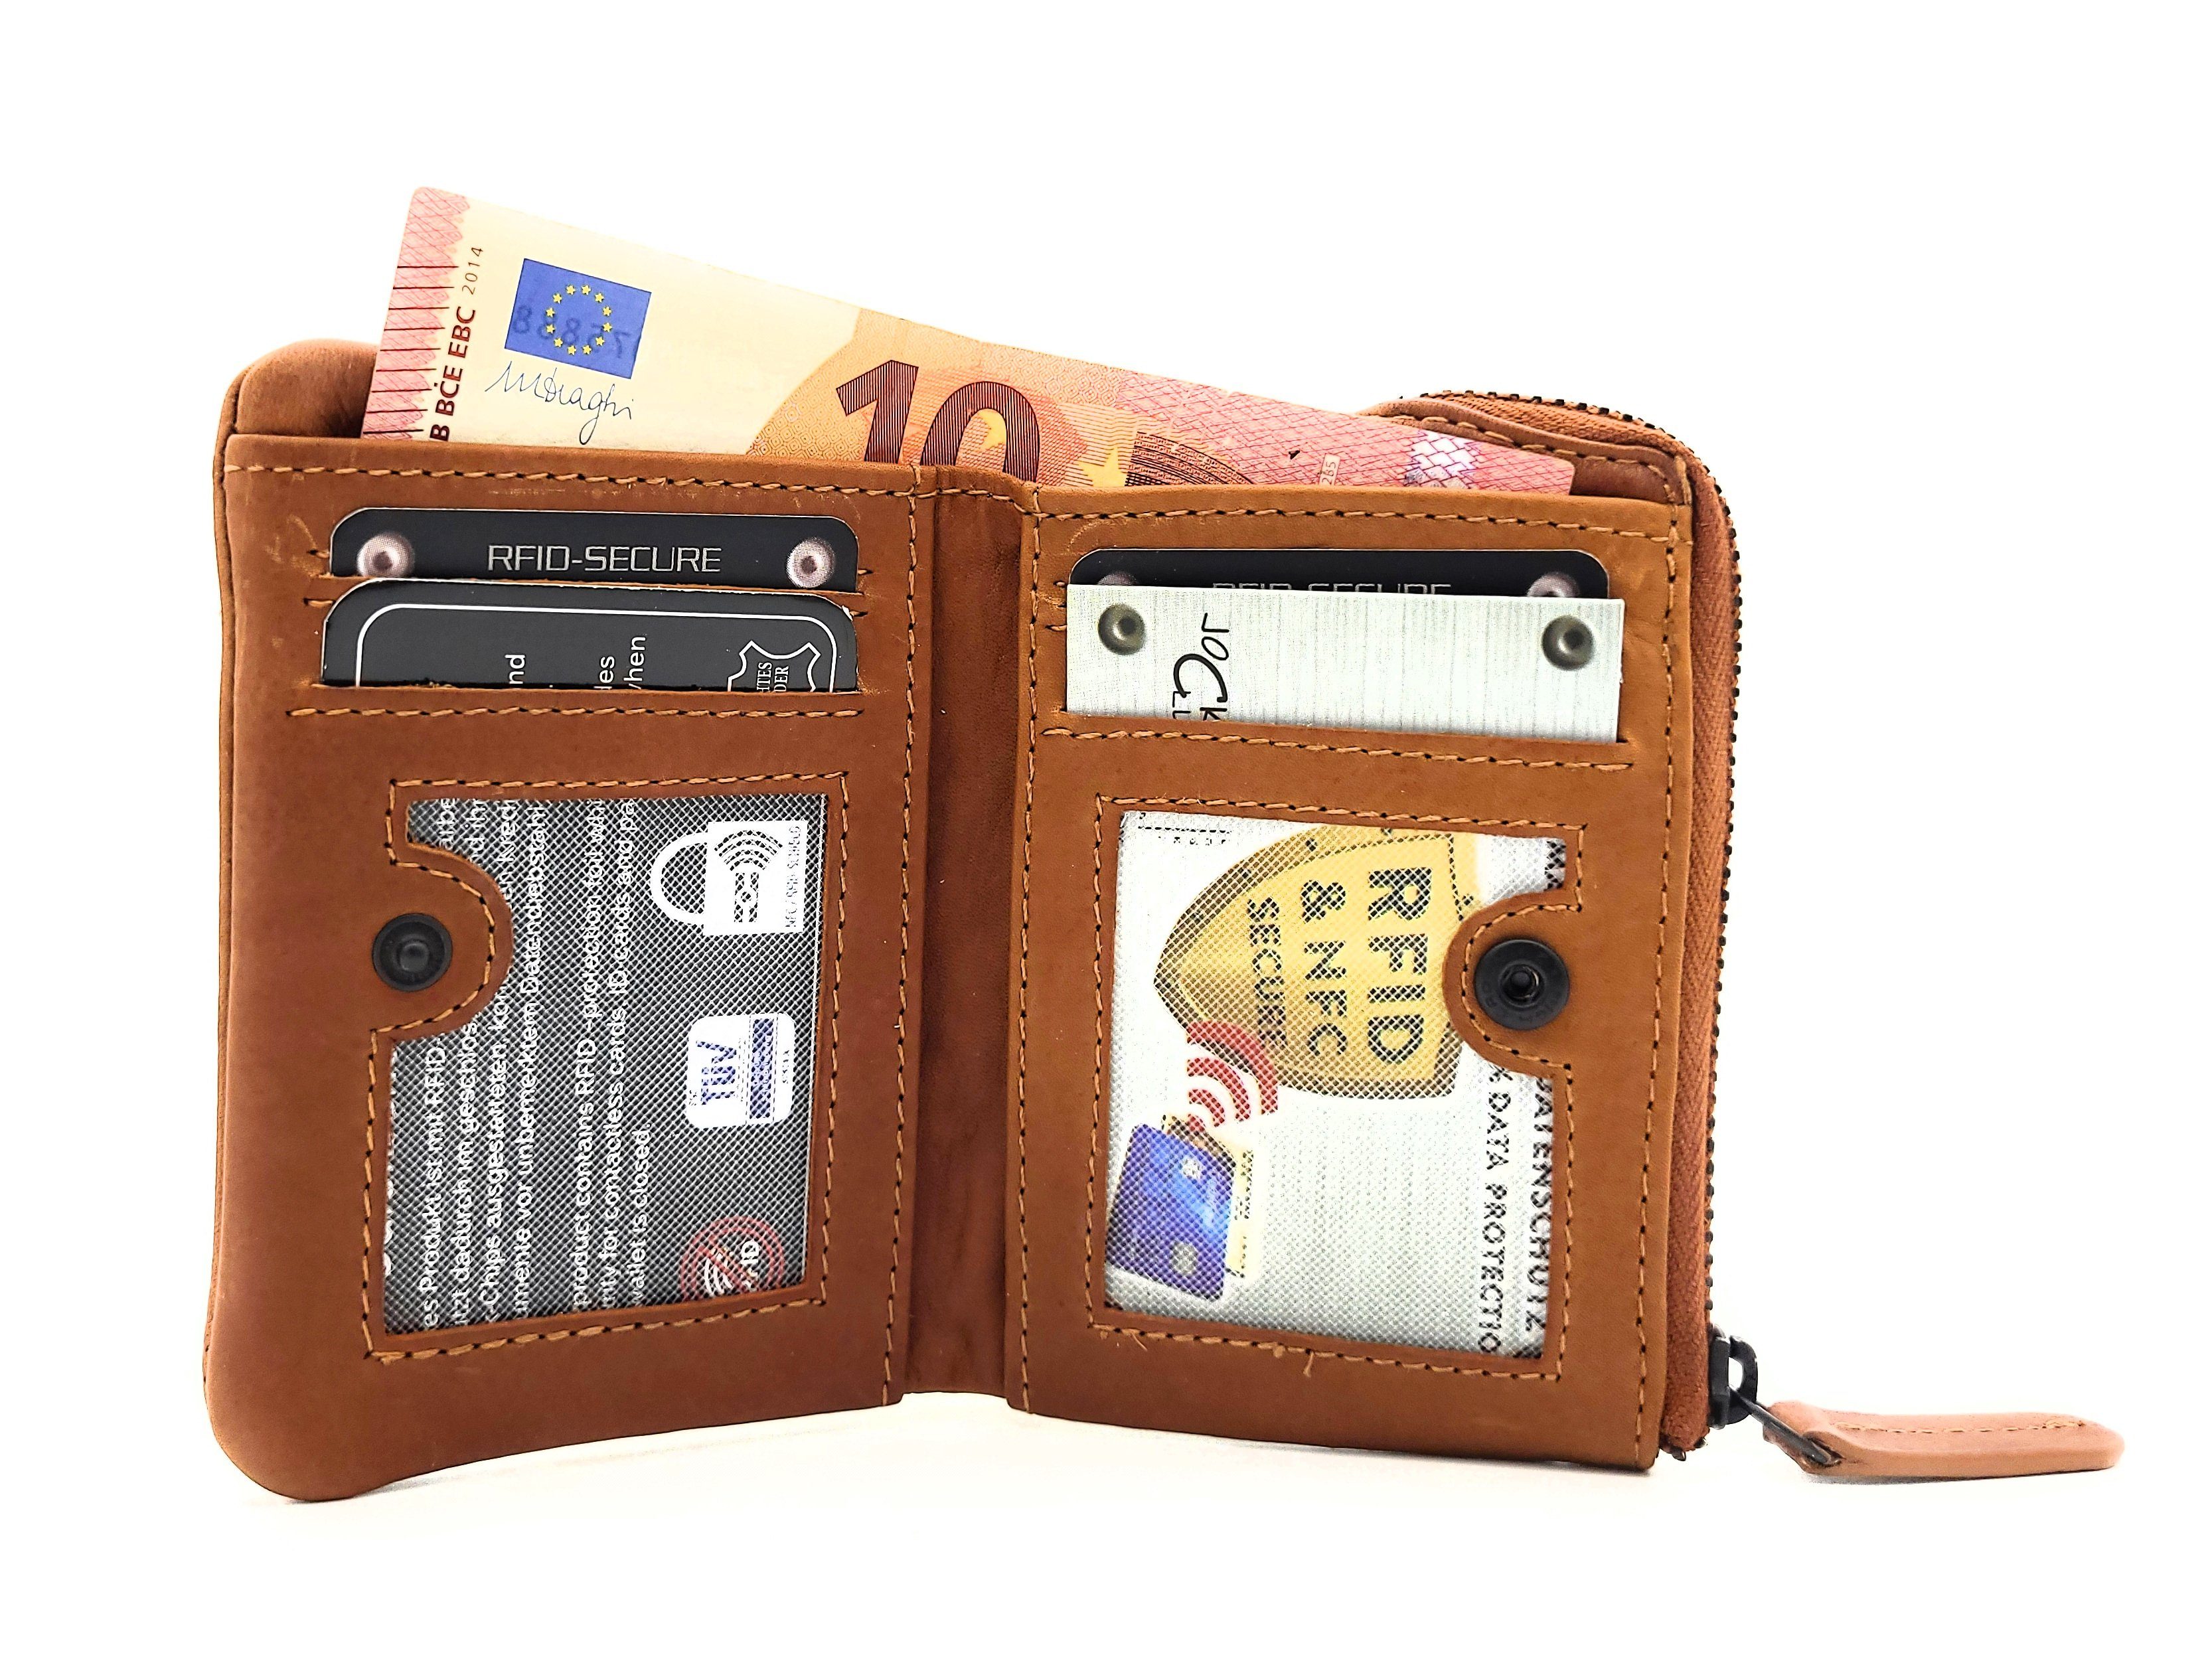 JOCKEY CLUB Mini Geldbörse echt Leder Portemonnaie mit RFID Schutz, gewachstes Rindleder, kompaktes Format, vintage, cognac braun